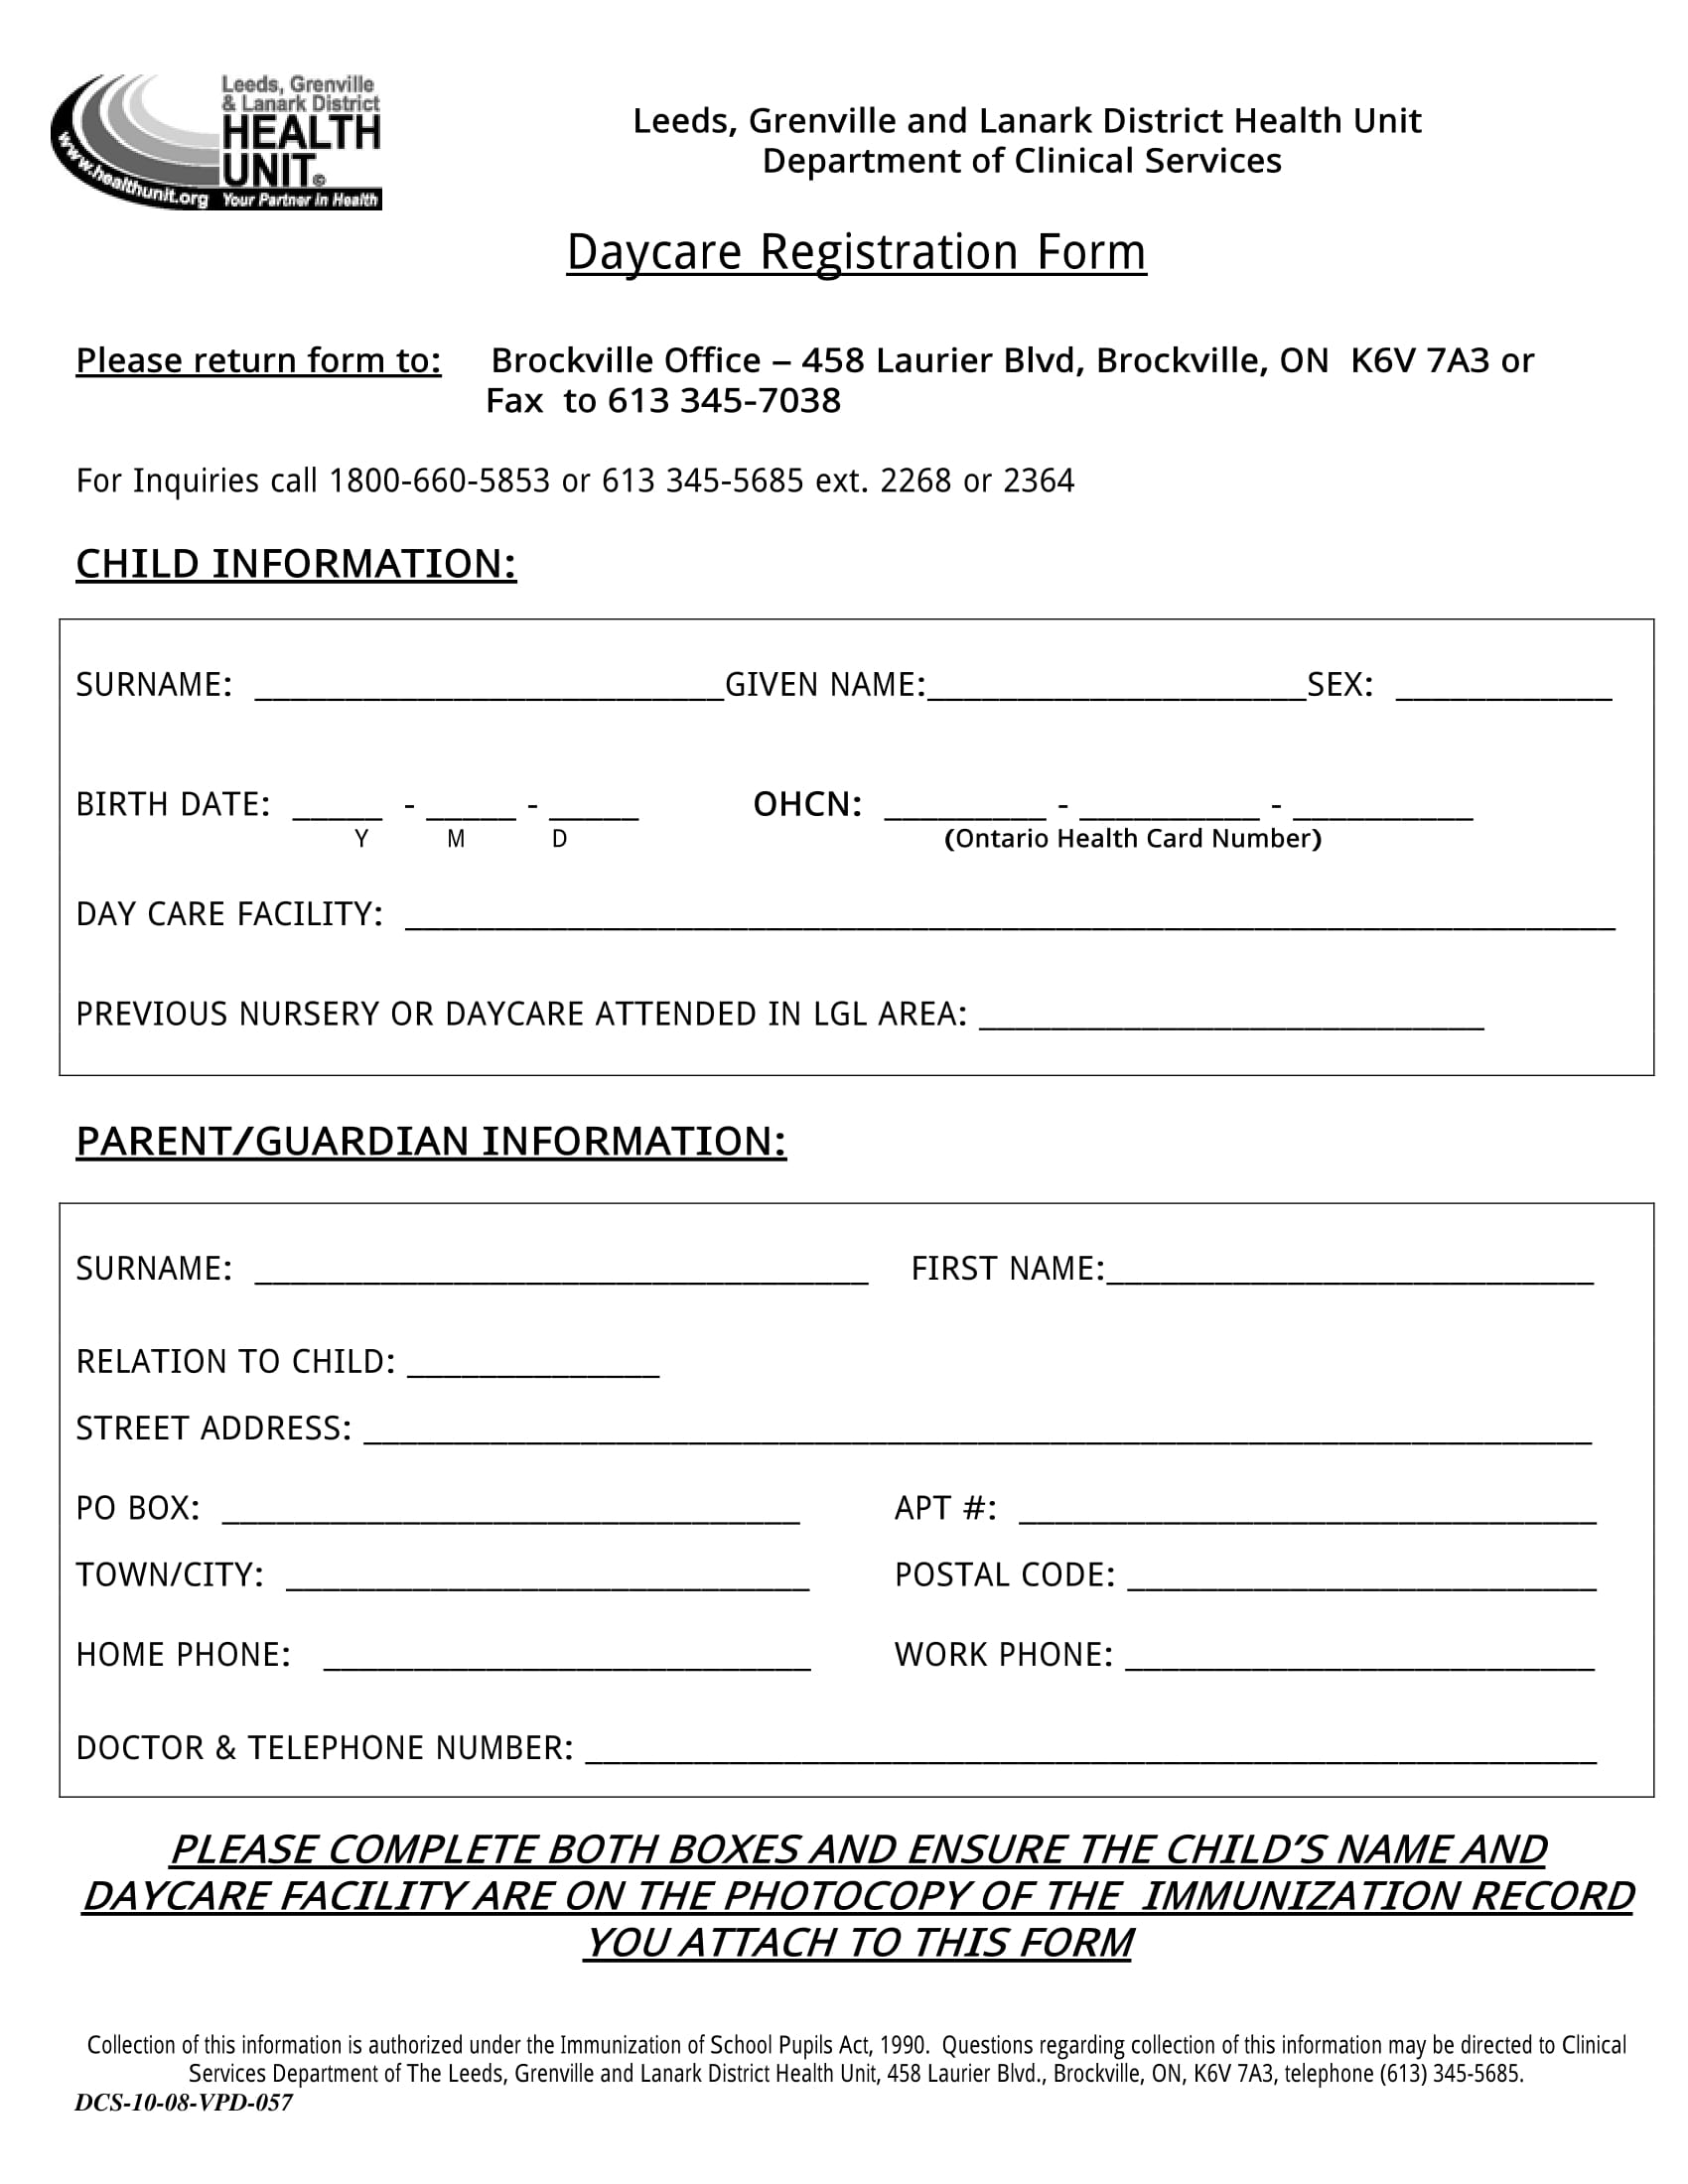 child daycare registration form 1